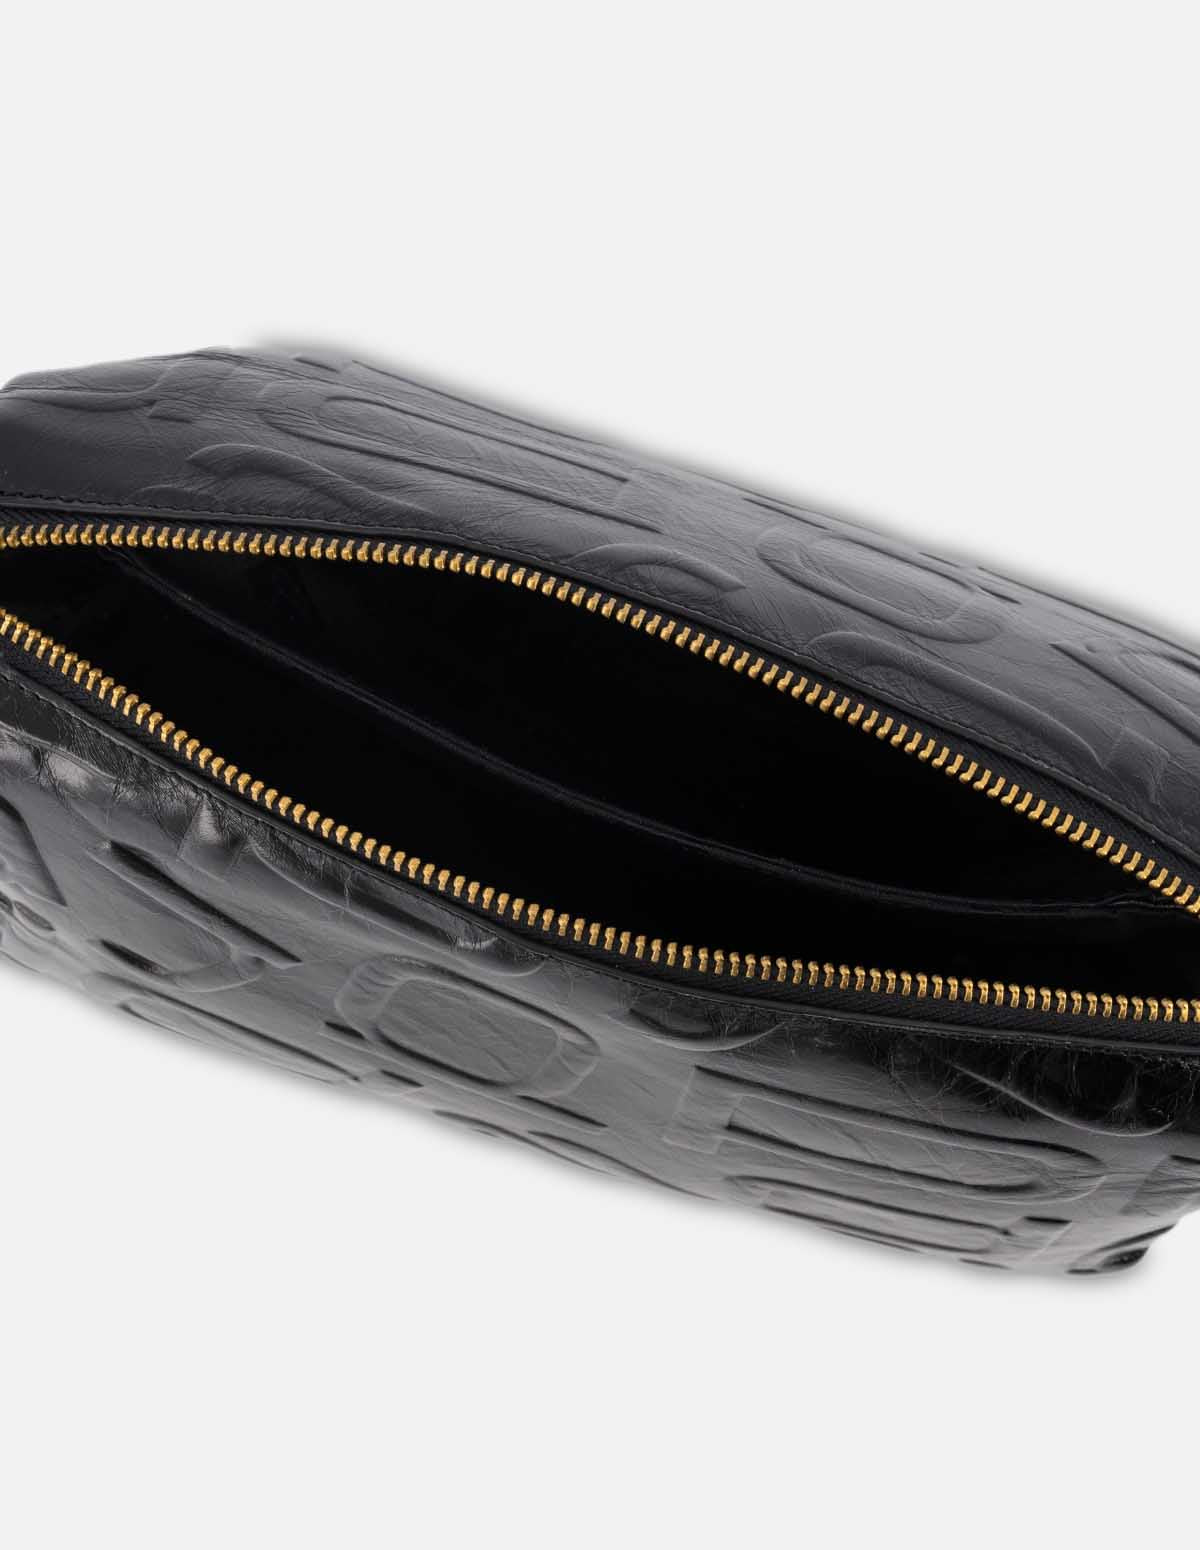 Bolso tipo bandolera en color negro con grabado anagrama letras Prada para mujer